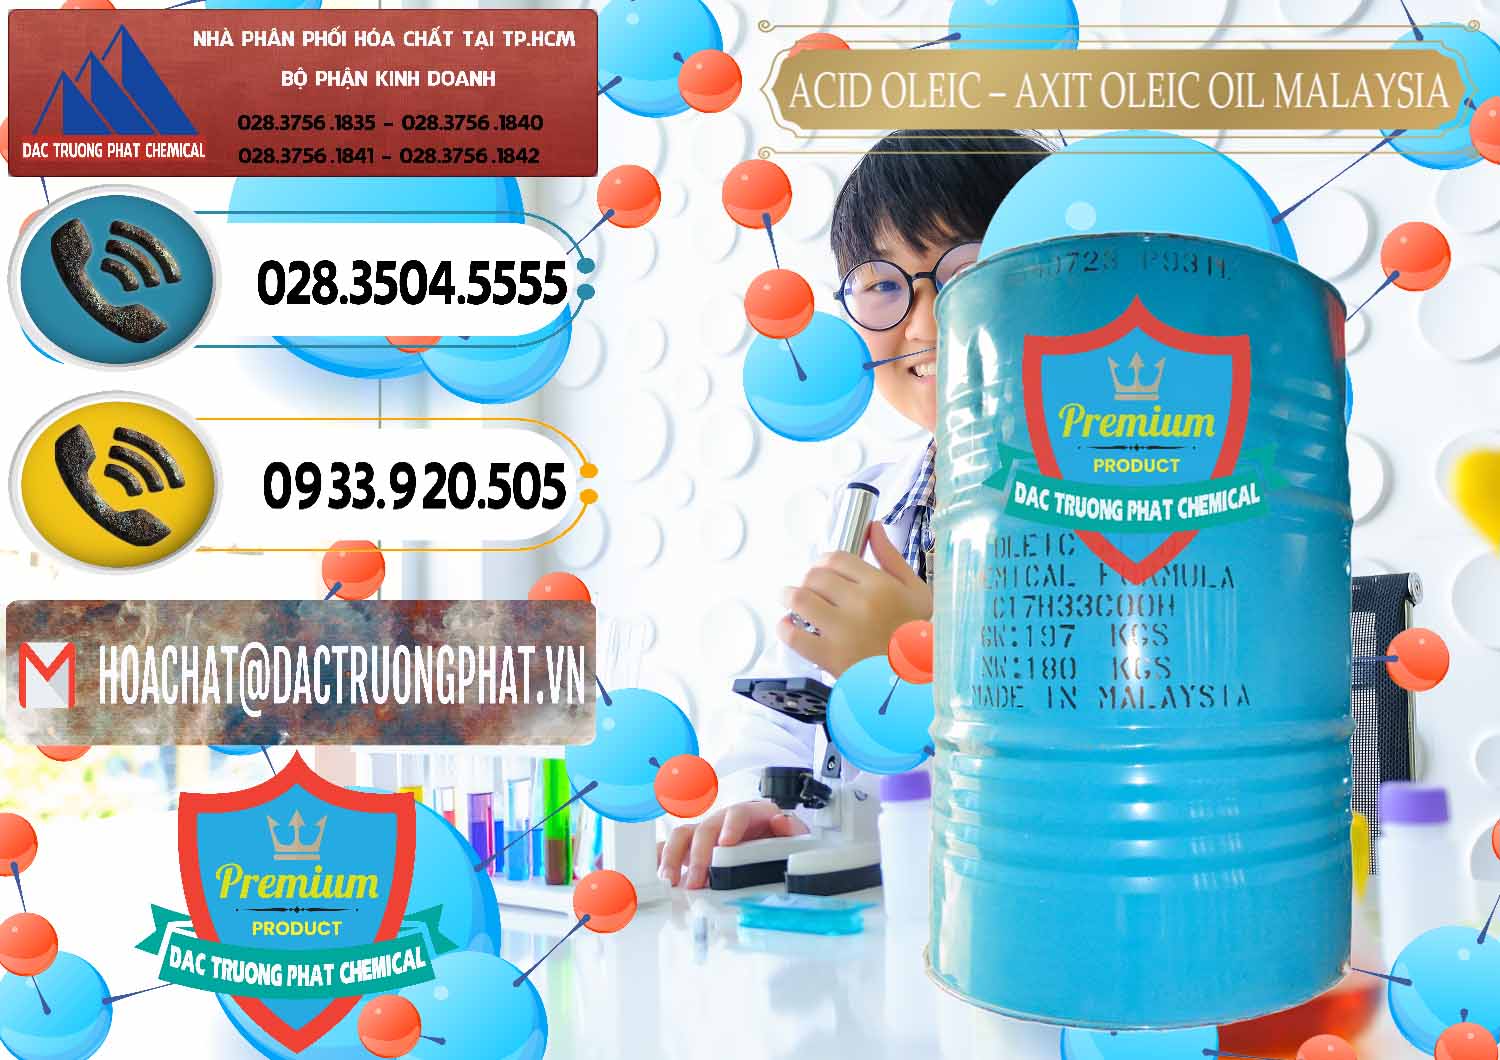 Nơi bán _ cung cấp Acid Oleic – Axit Oleic Oil Malaysia - 0013 - Công ty chuyên kinh doanh _ phân phối hóa chất tại TP.HCM - hoachatdetnhuom.vn